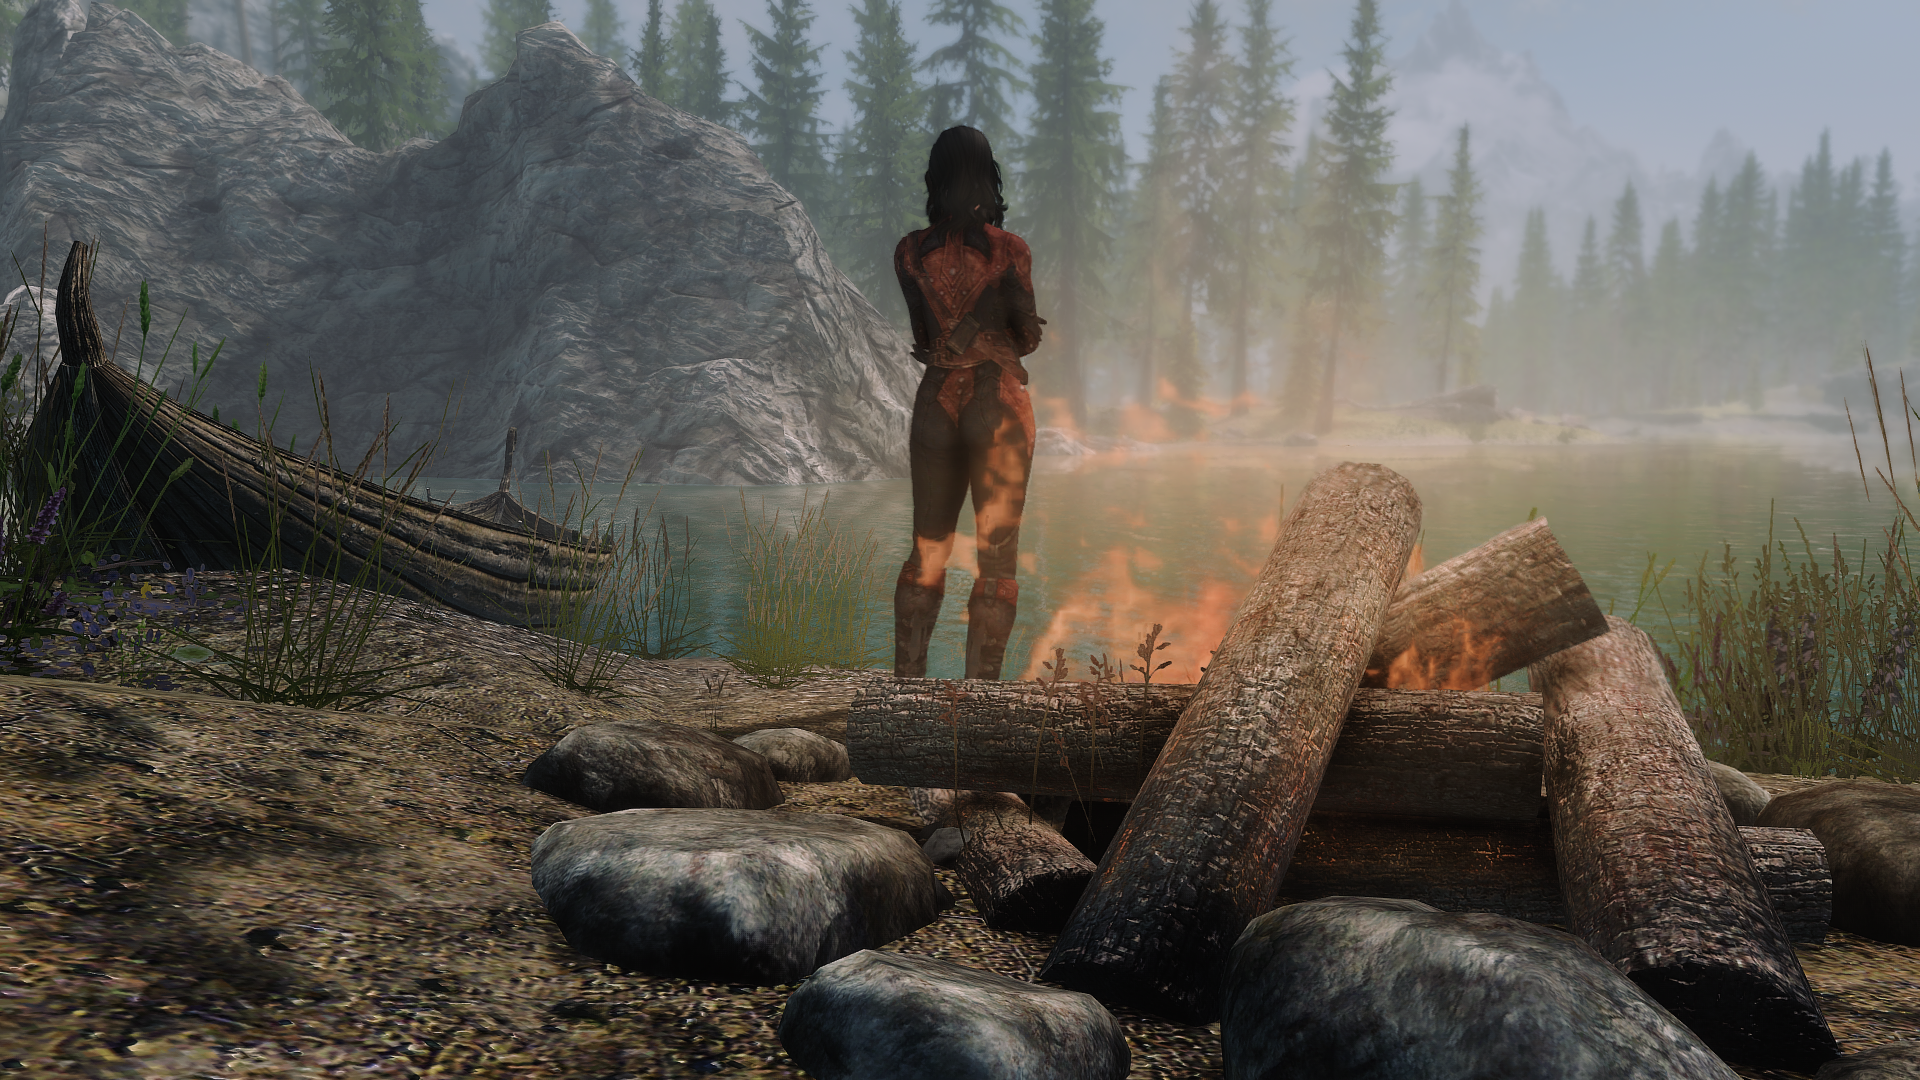 General 1920x1080 The Elder Scrolls V: Skyrim bonfires lake forest The Elder Scrolls video games